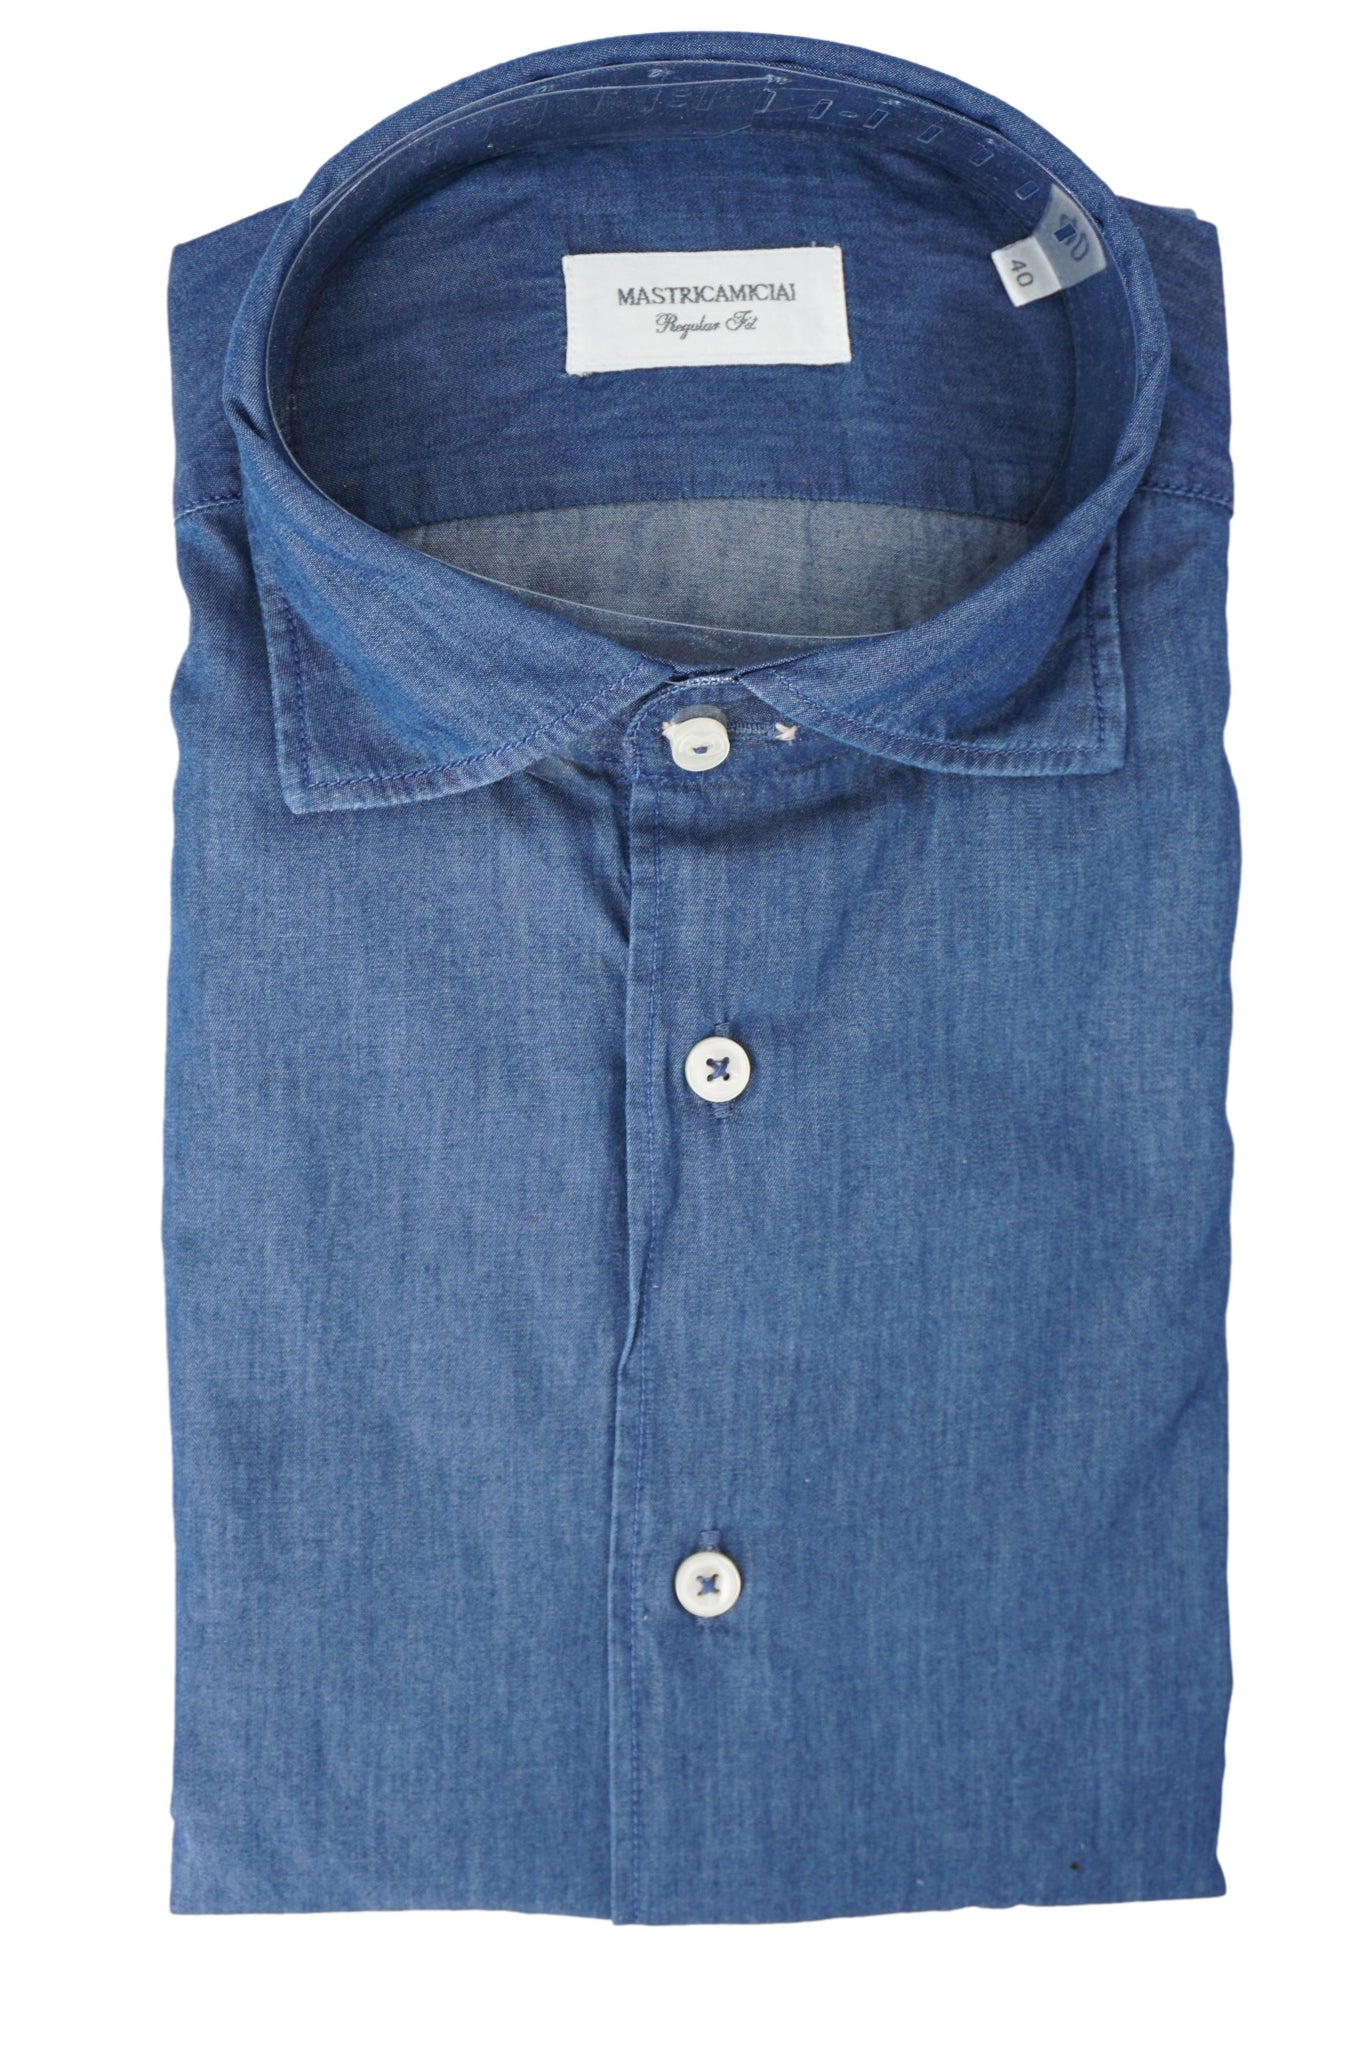 Camicia Effetto Denim / Jeans - Ideal Moda